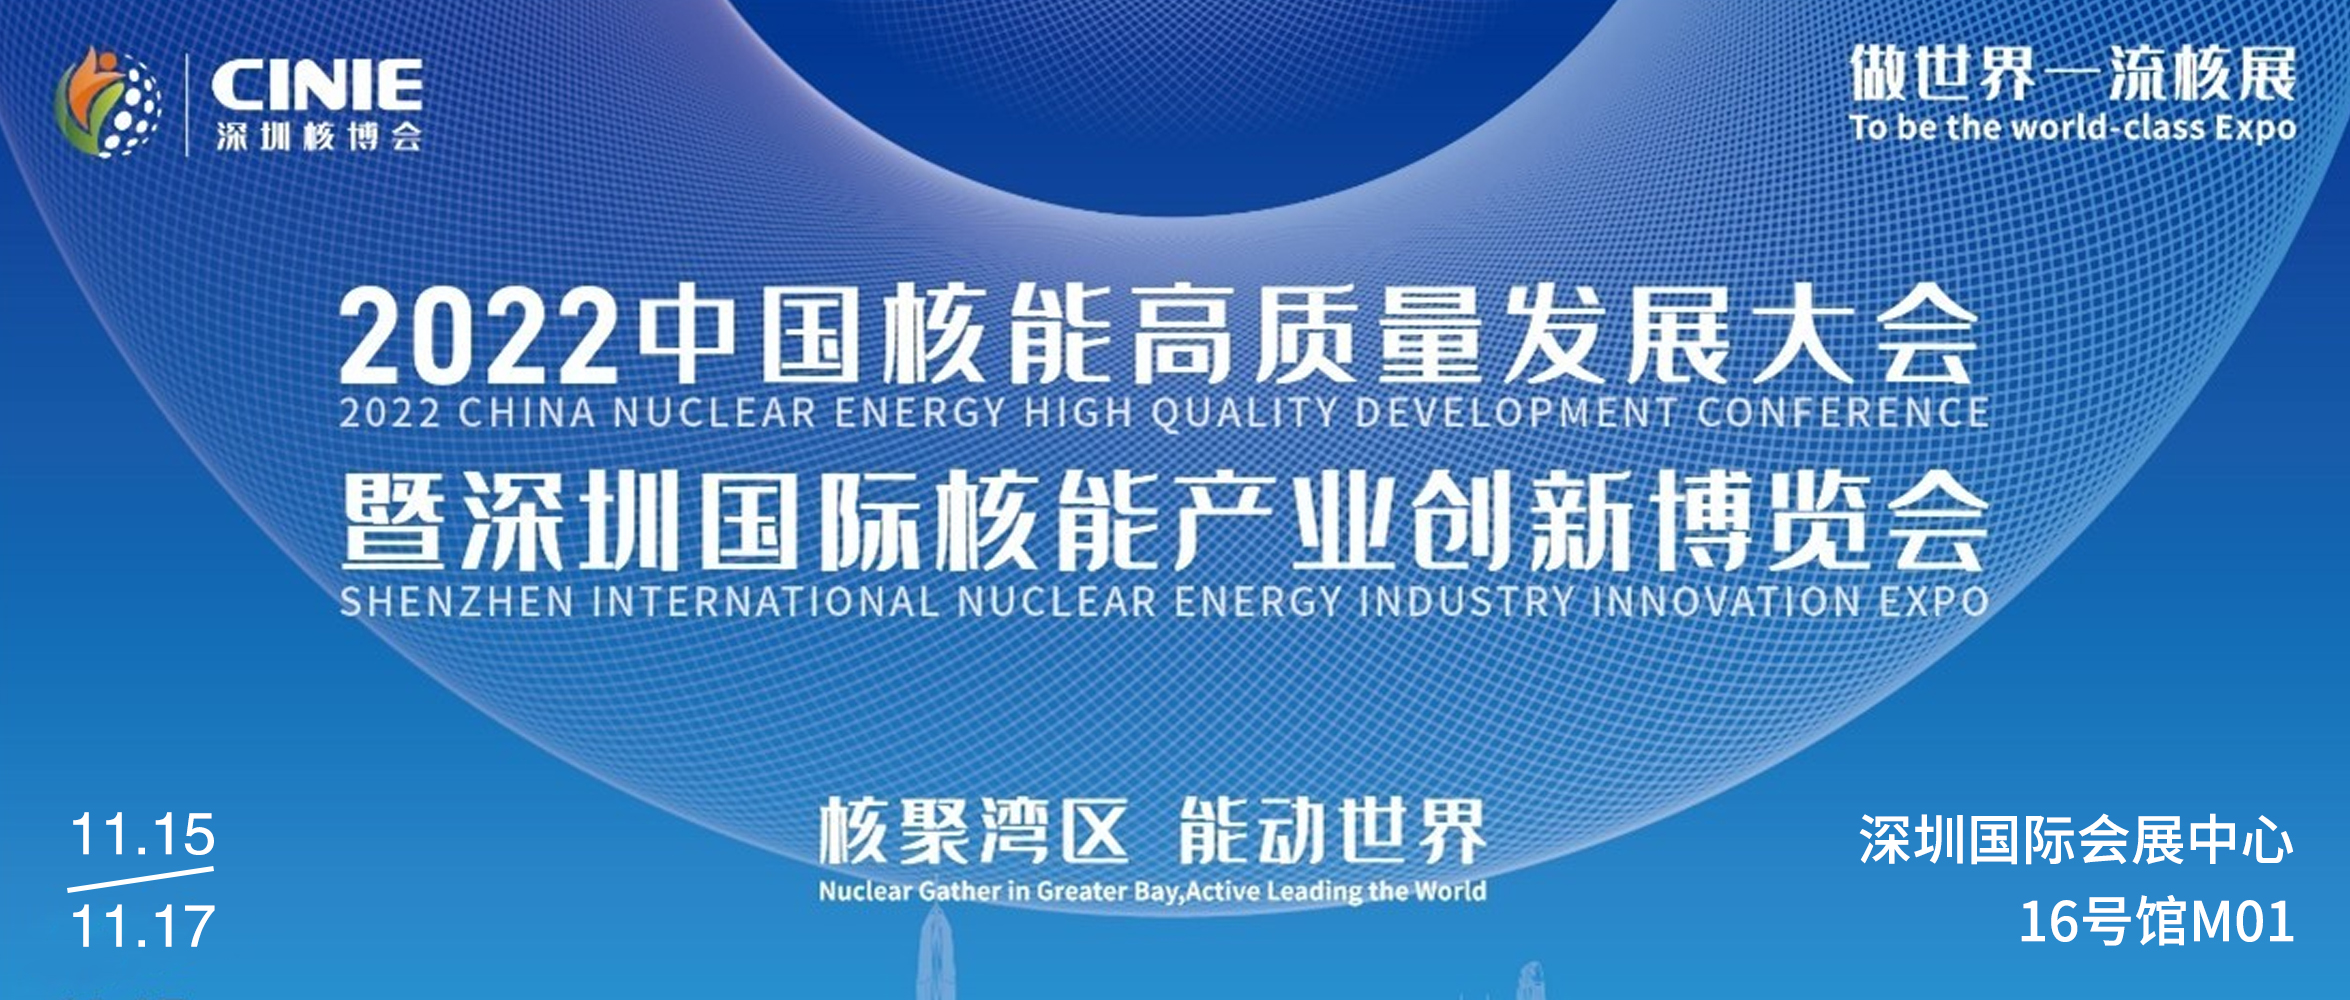 2022核电展(1).jpg